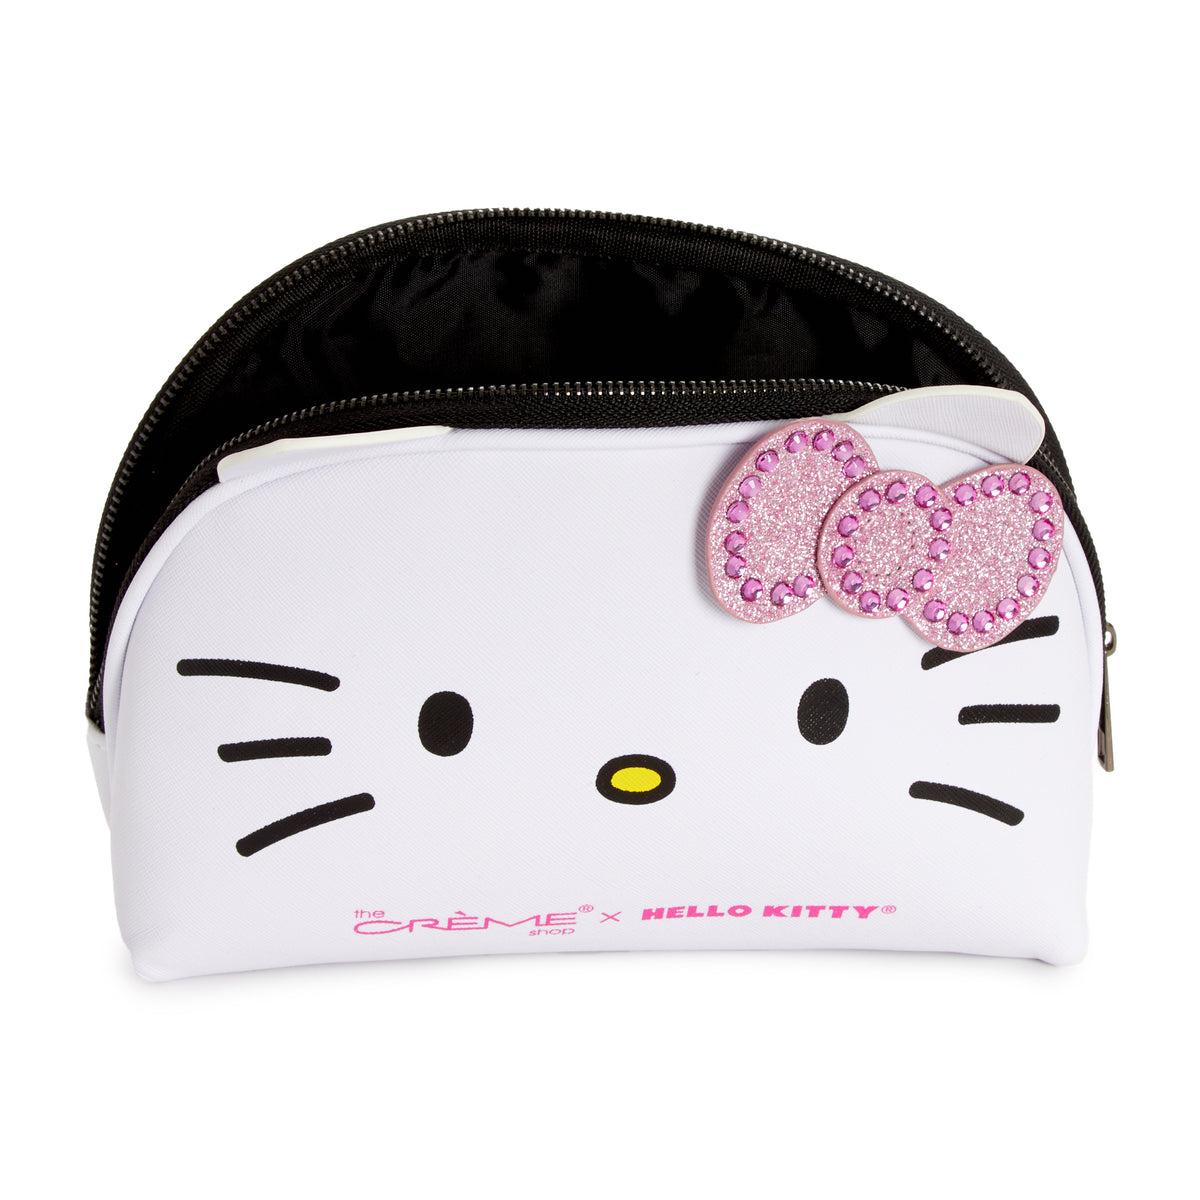 Creme Shop x Hello Kitty Makeup Bag Pouch Tote Case